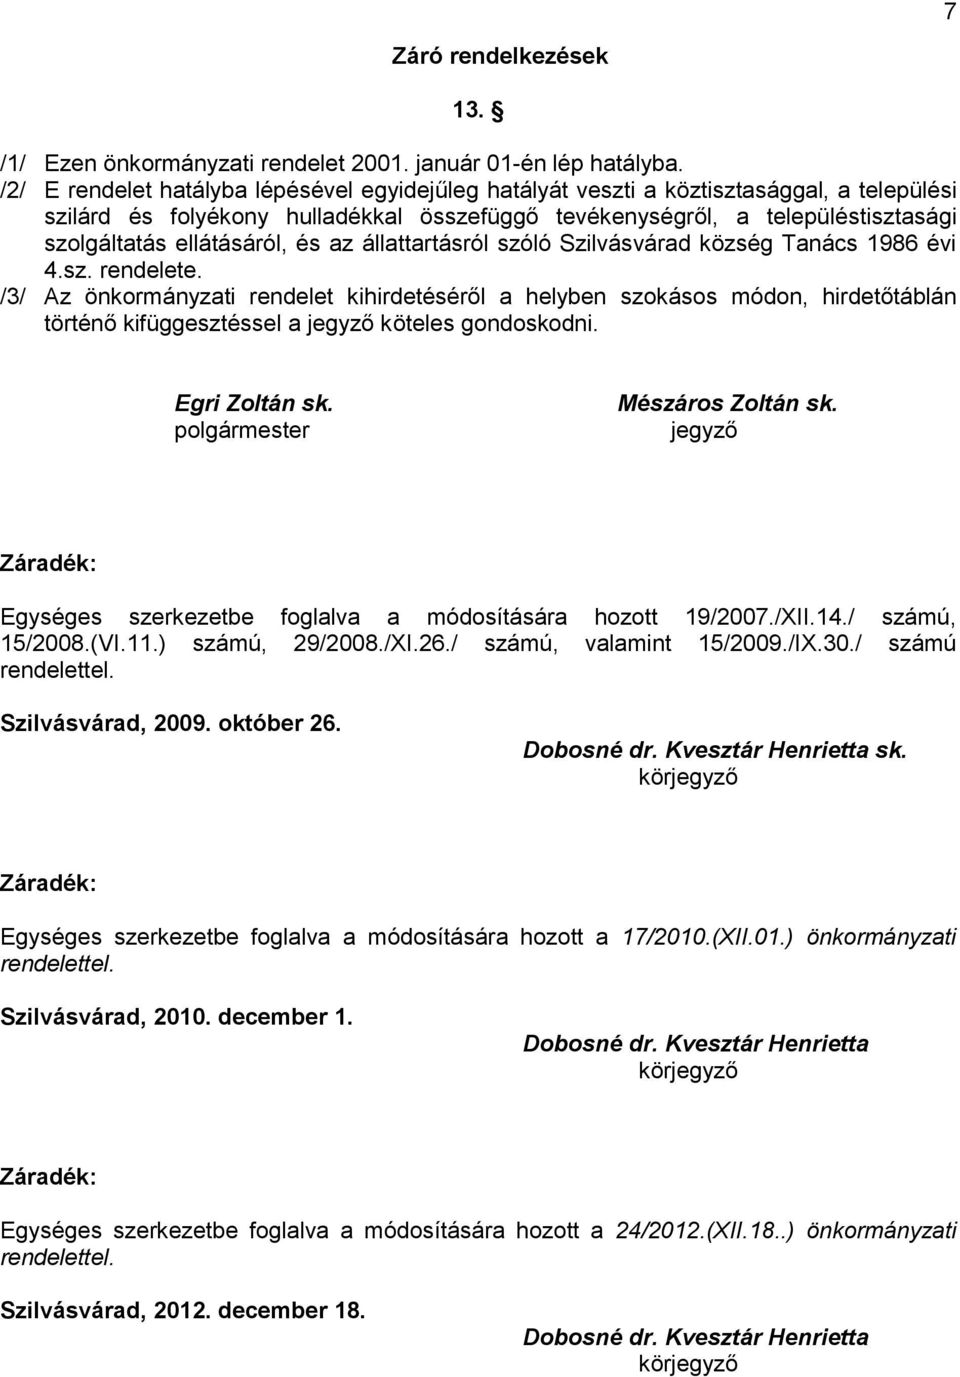 ellátásáról, és az állattartásról szóló Szilvásvárad község Tanács 1986 évi 4.sz. rendelete.